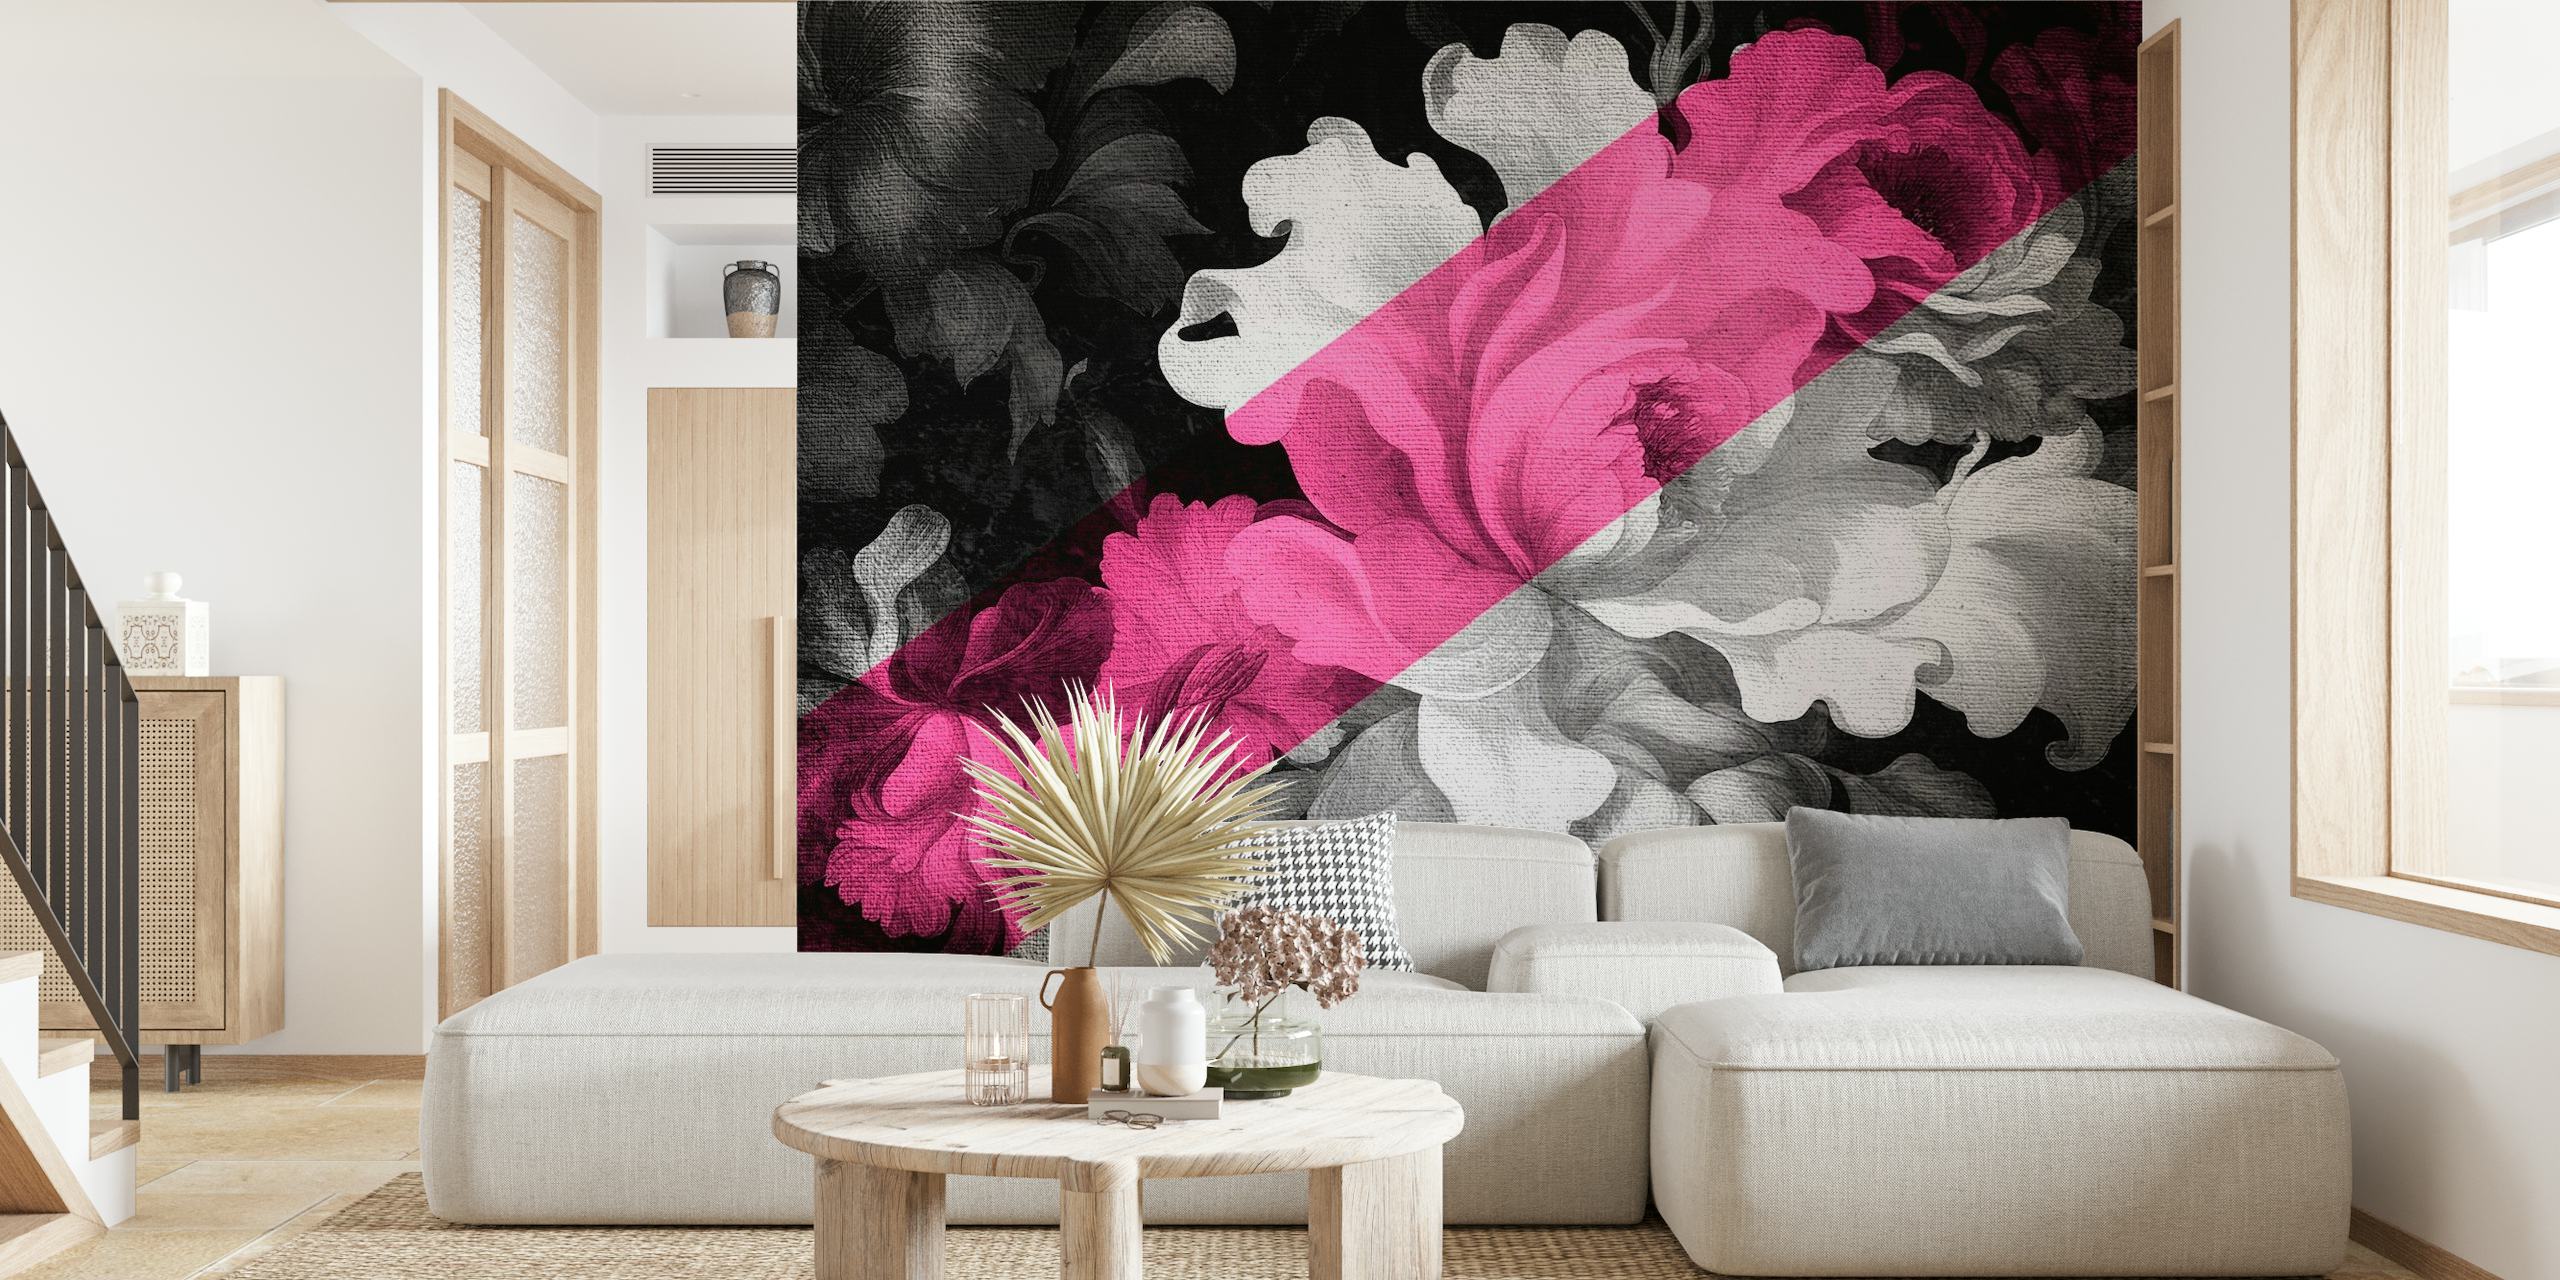 Yksivärinen ja vaaleanpunainen kukka-seinämaalaus, jossa yhdistyvät renessanssin ja modernin pop-taiteen tyylit